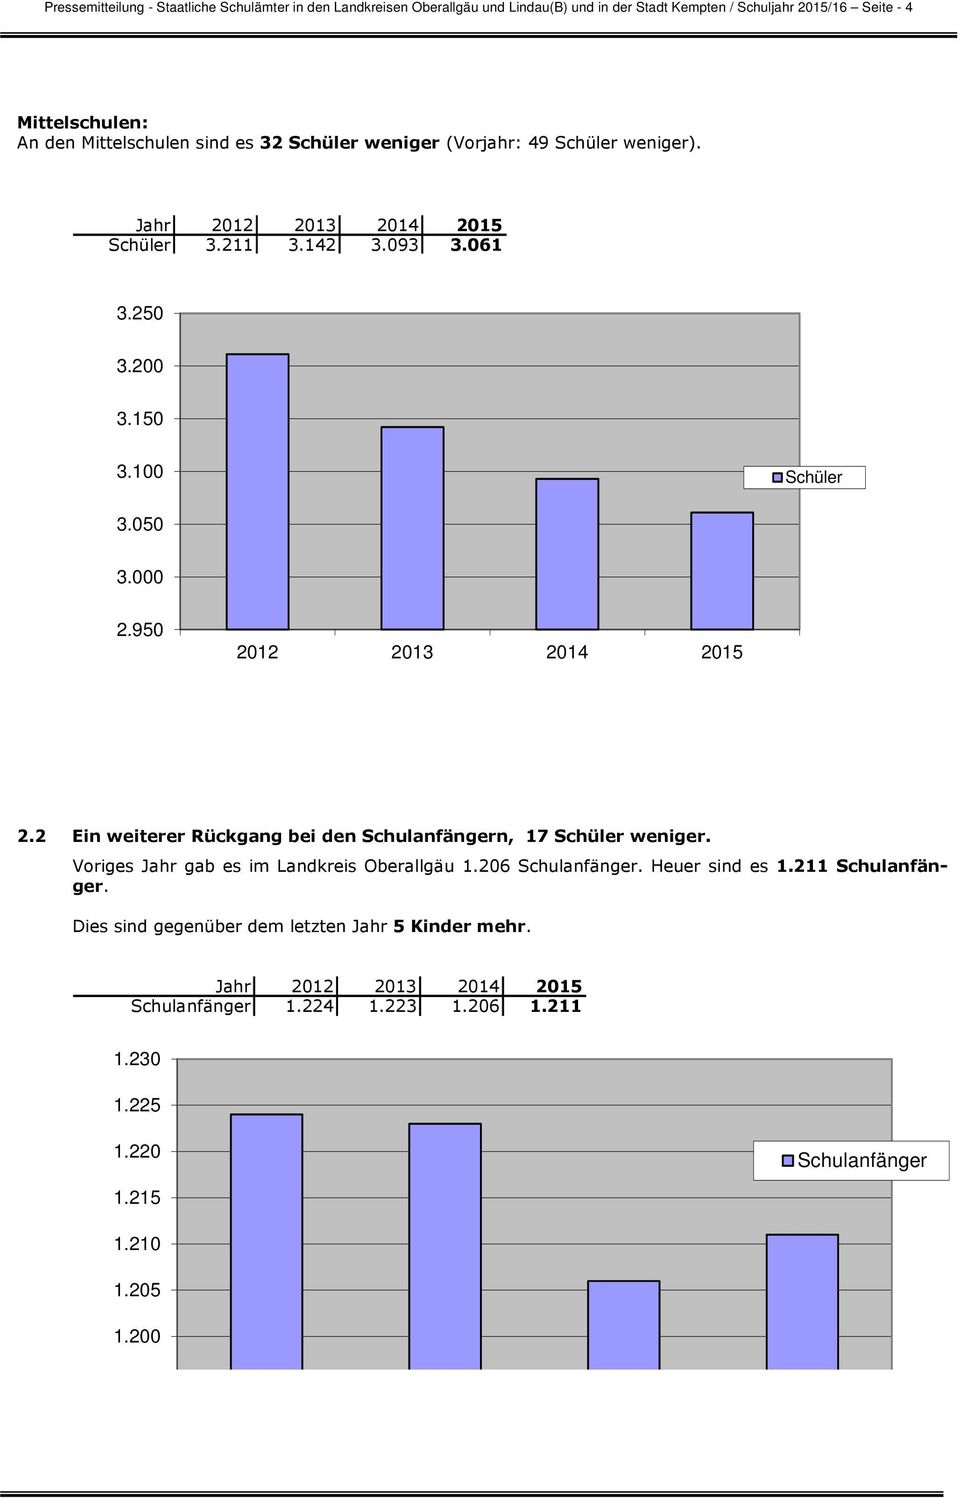 2 Ein weiterer Rückgang bei den Schulanfängern, 17 weniger. Voriges Jahr gab es im Landkreis Oberallgäu 1.206 Schulanfänger. Heuer sind es 1.